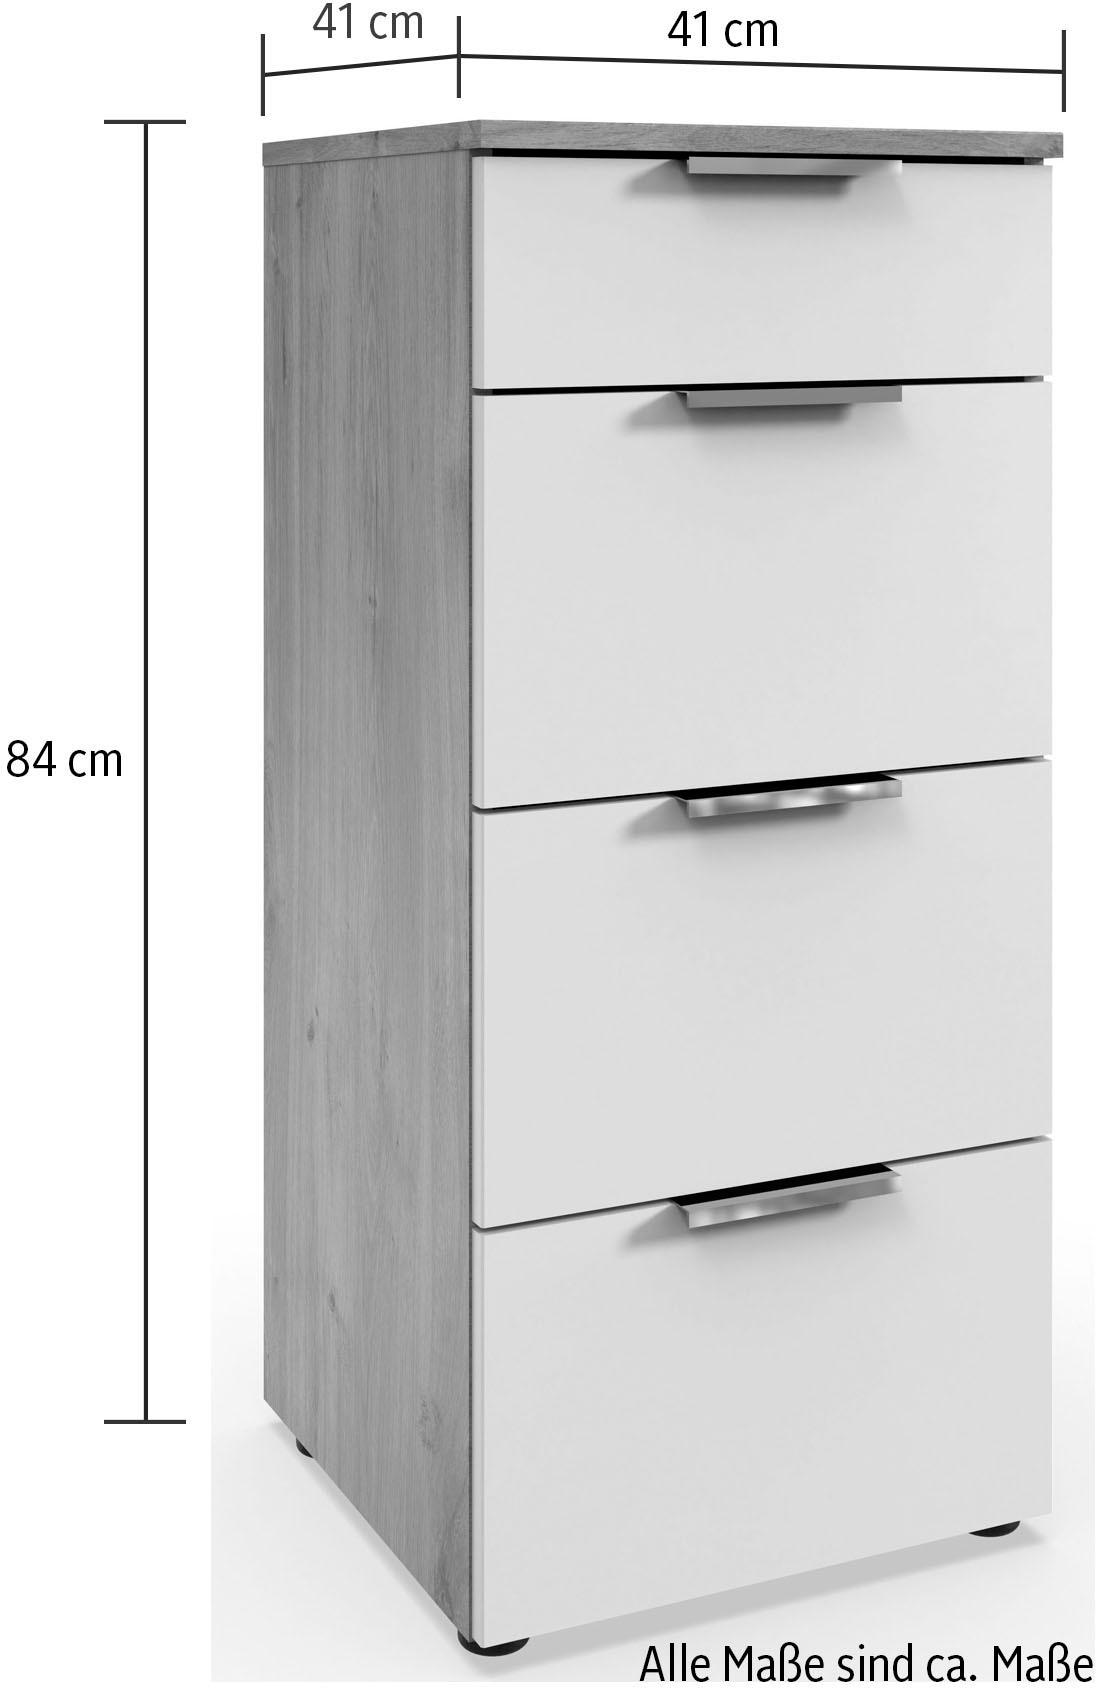 Wimex Schubkastenkommode »Level by fresh to go«, 4 Schubladen mit soft-close Funktion, 41cm breit, 84cm hoch